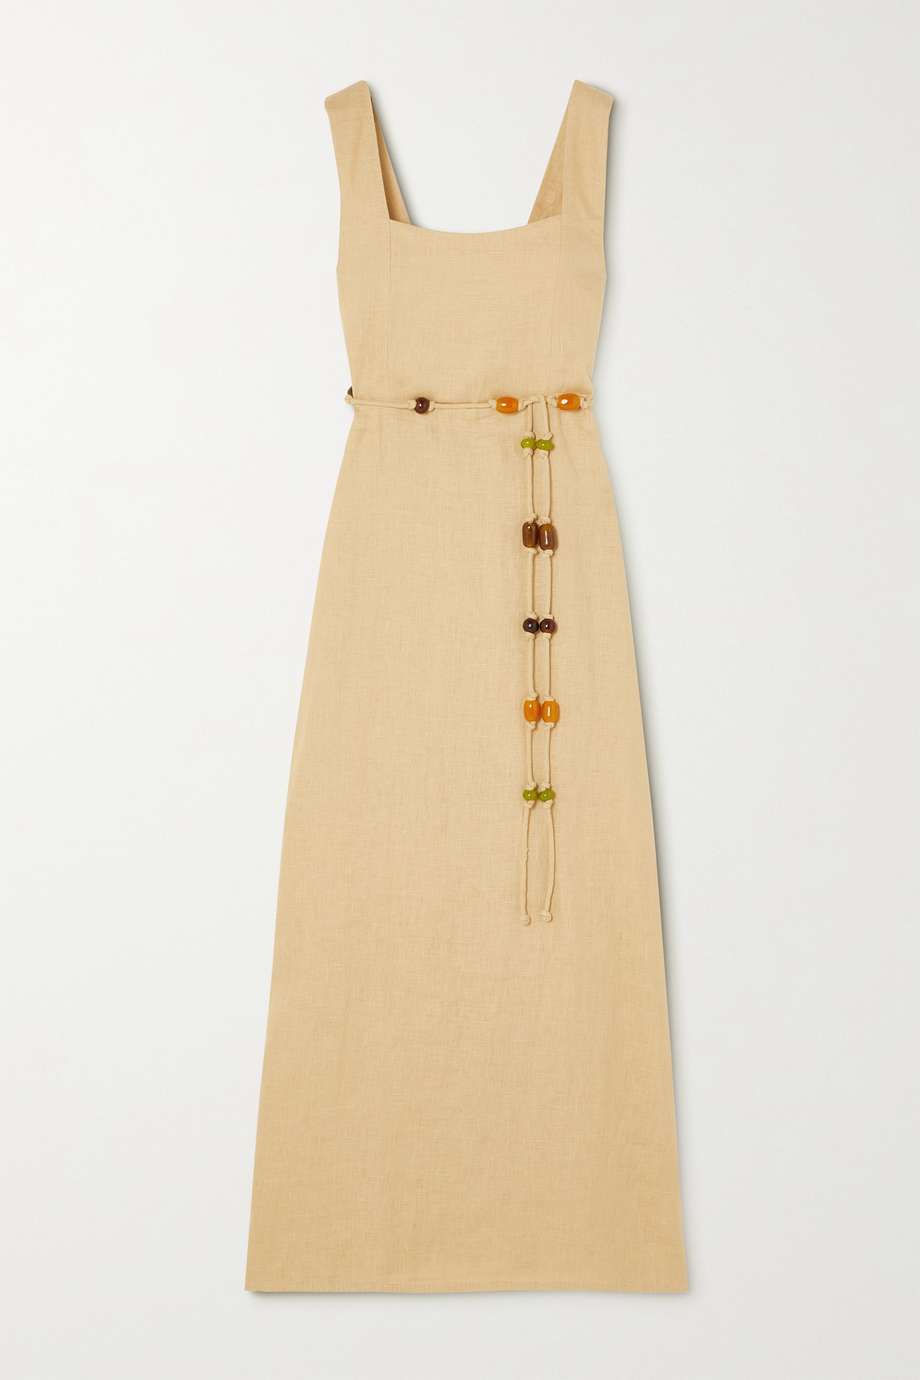 Faithfull the Brand x Monikh + + Net Sustain Azalea Belted Linen Maxi Dress